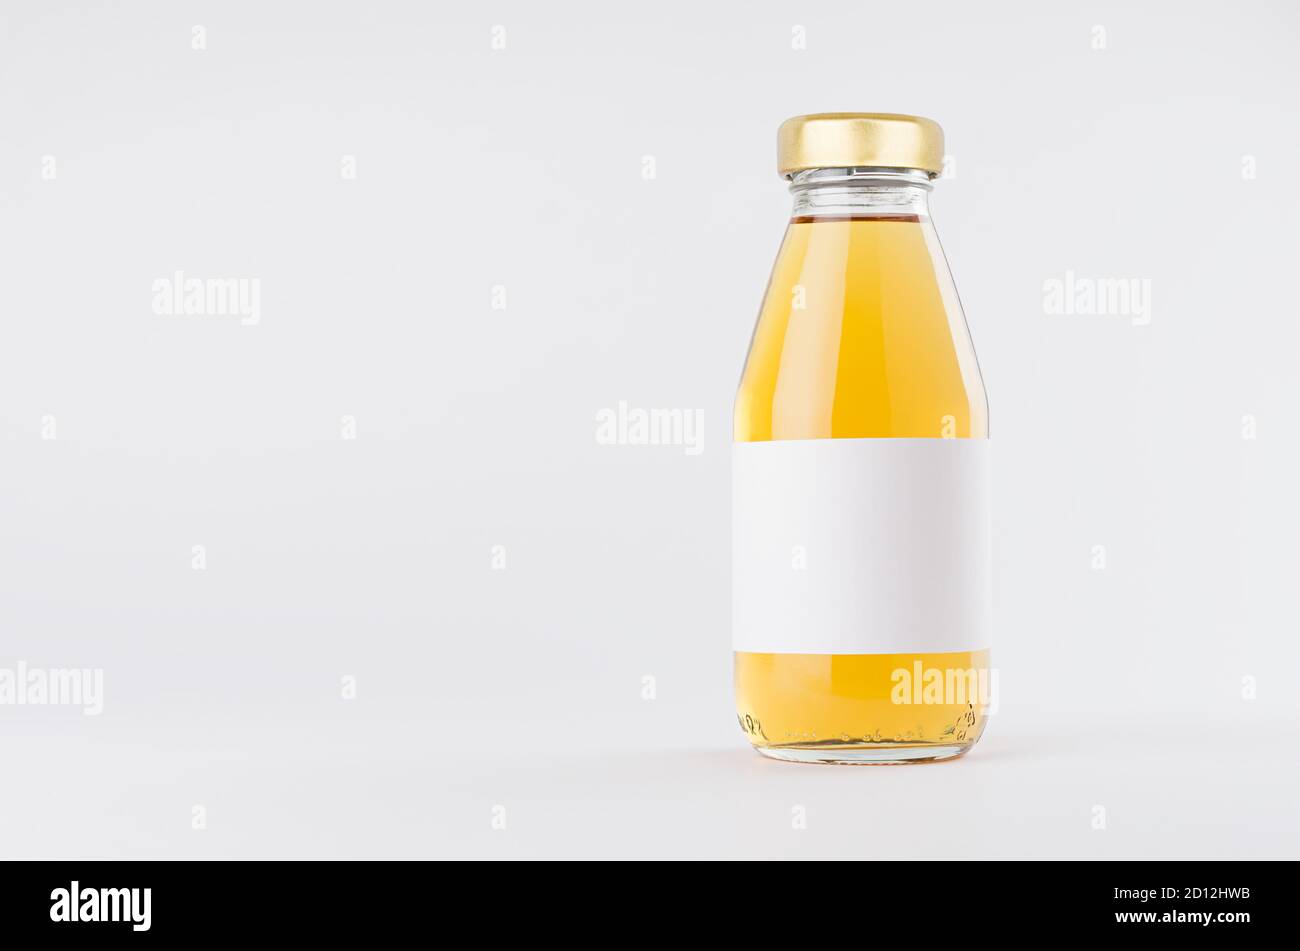 Jugo de manzana amarillo en botella de vidrio con tapón de oro y blanco etiqueta en blanco se mofa sobre fondo blanco con espacio de copia, plantilla para el embalaje, publicidad Foto de stock